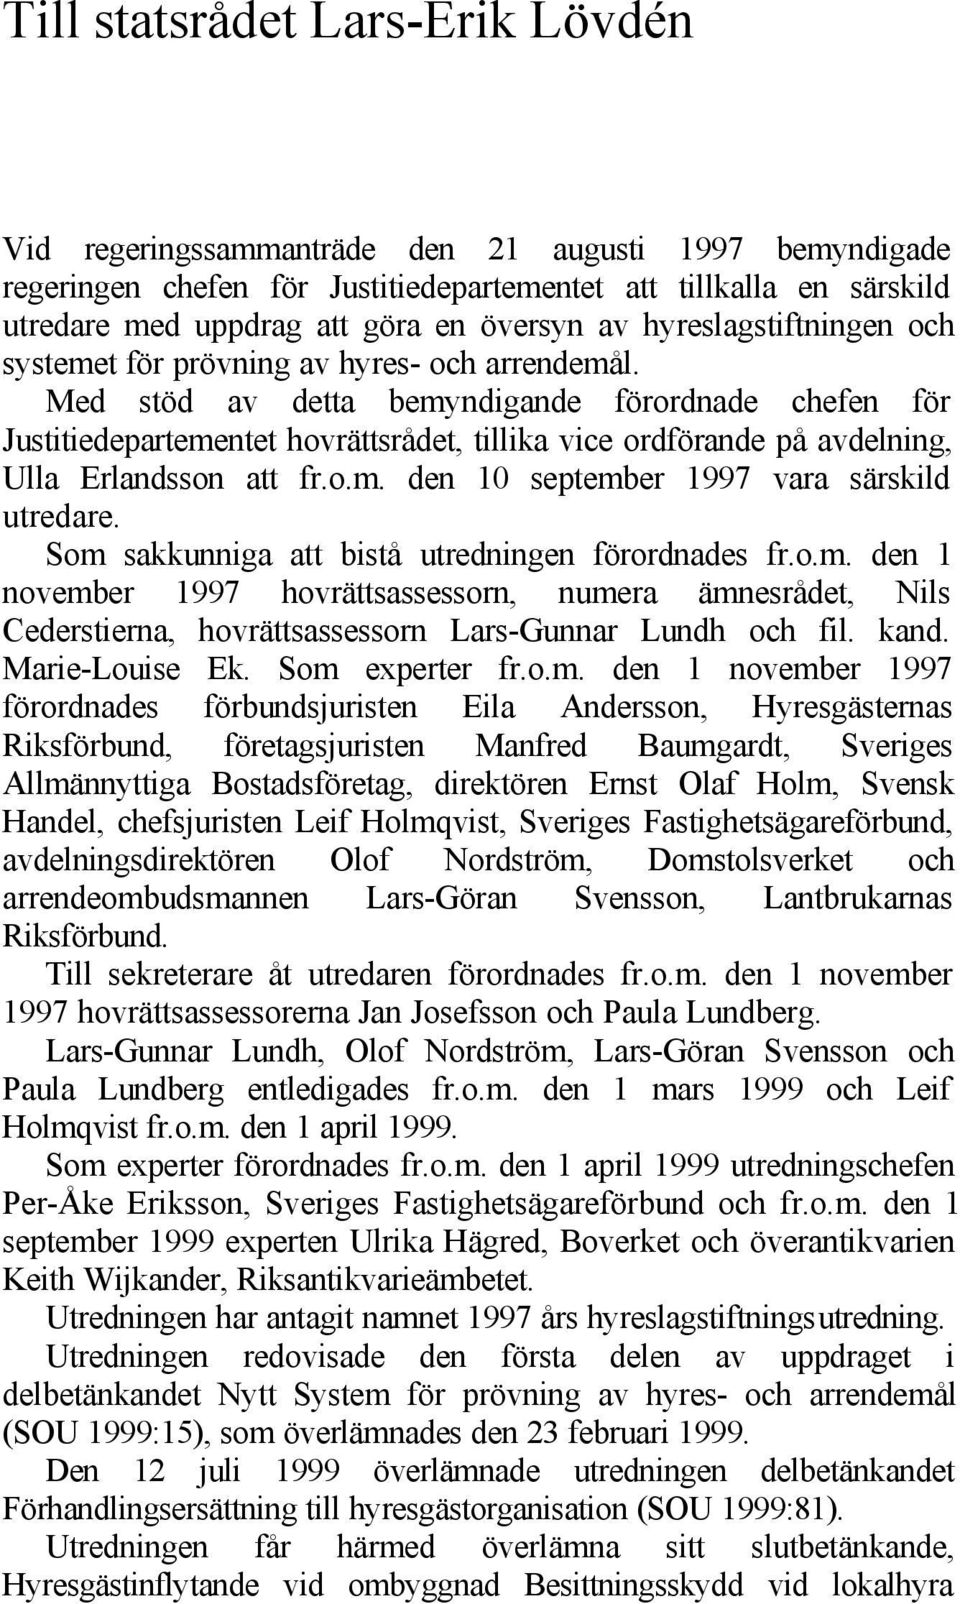 Med stöd av detta bemyndigande förordnade chefen för Justitiedepartementet hovrättsrådet, tillika vice ordförande på avdelning, Ulla Erlandsson att fr.o.m. den 10 september 1997 vara särskild utredare.